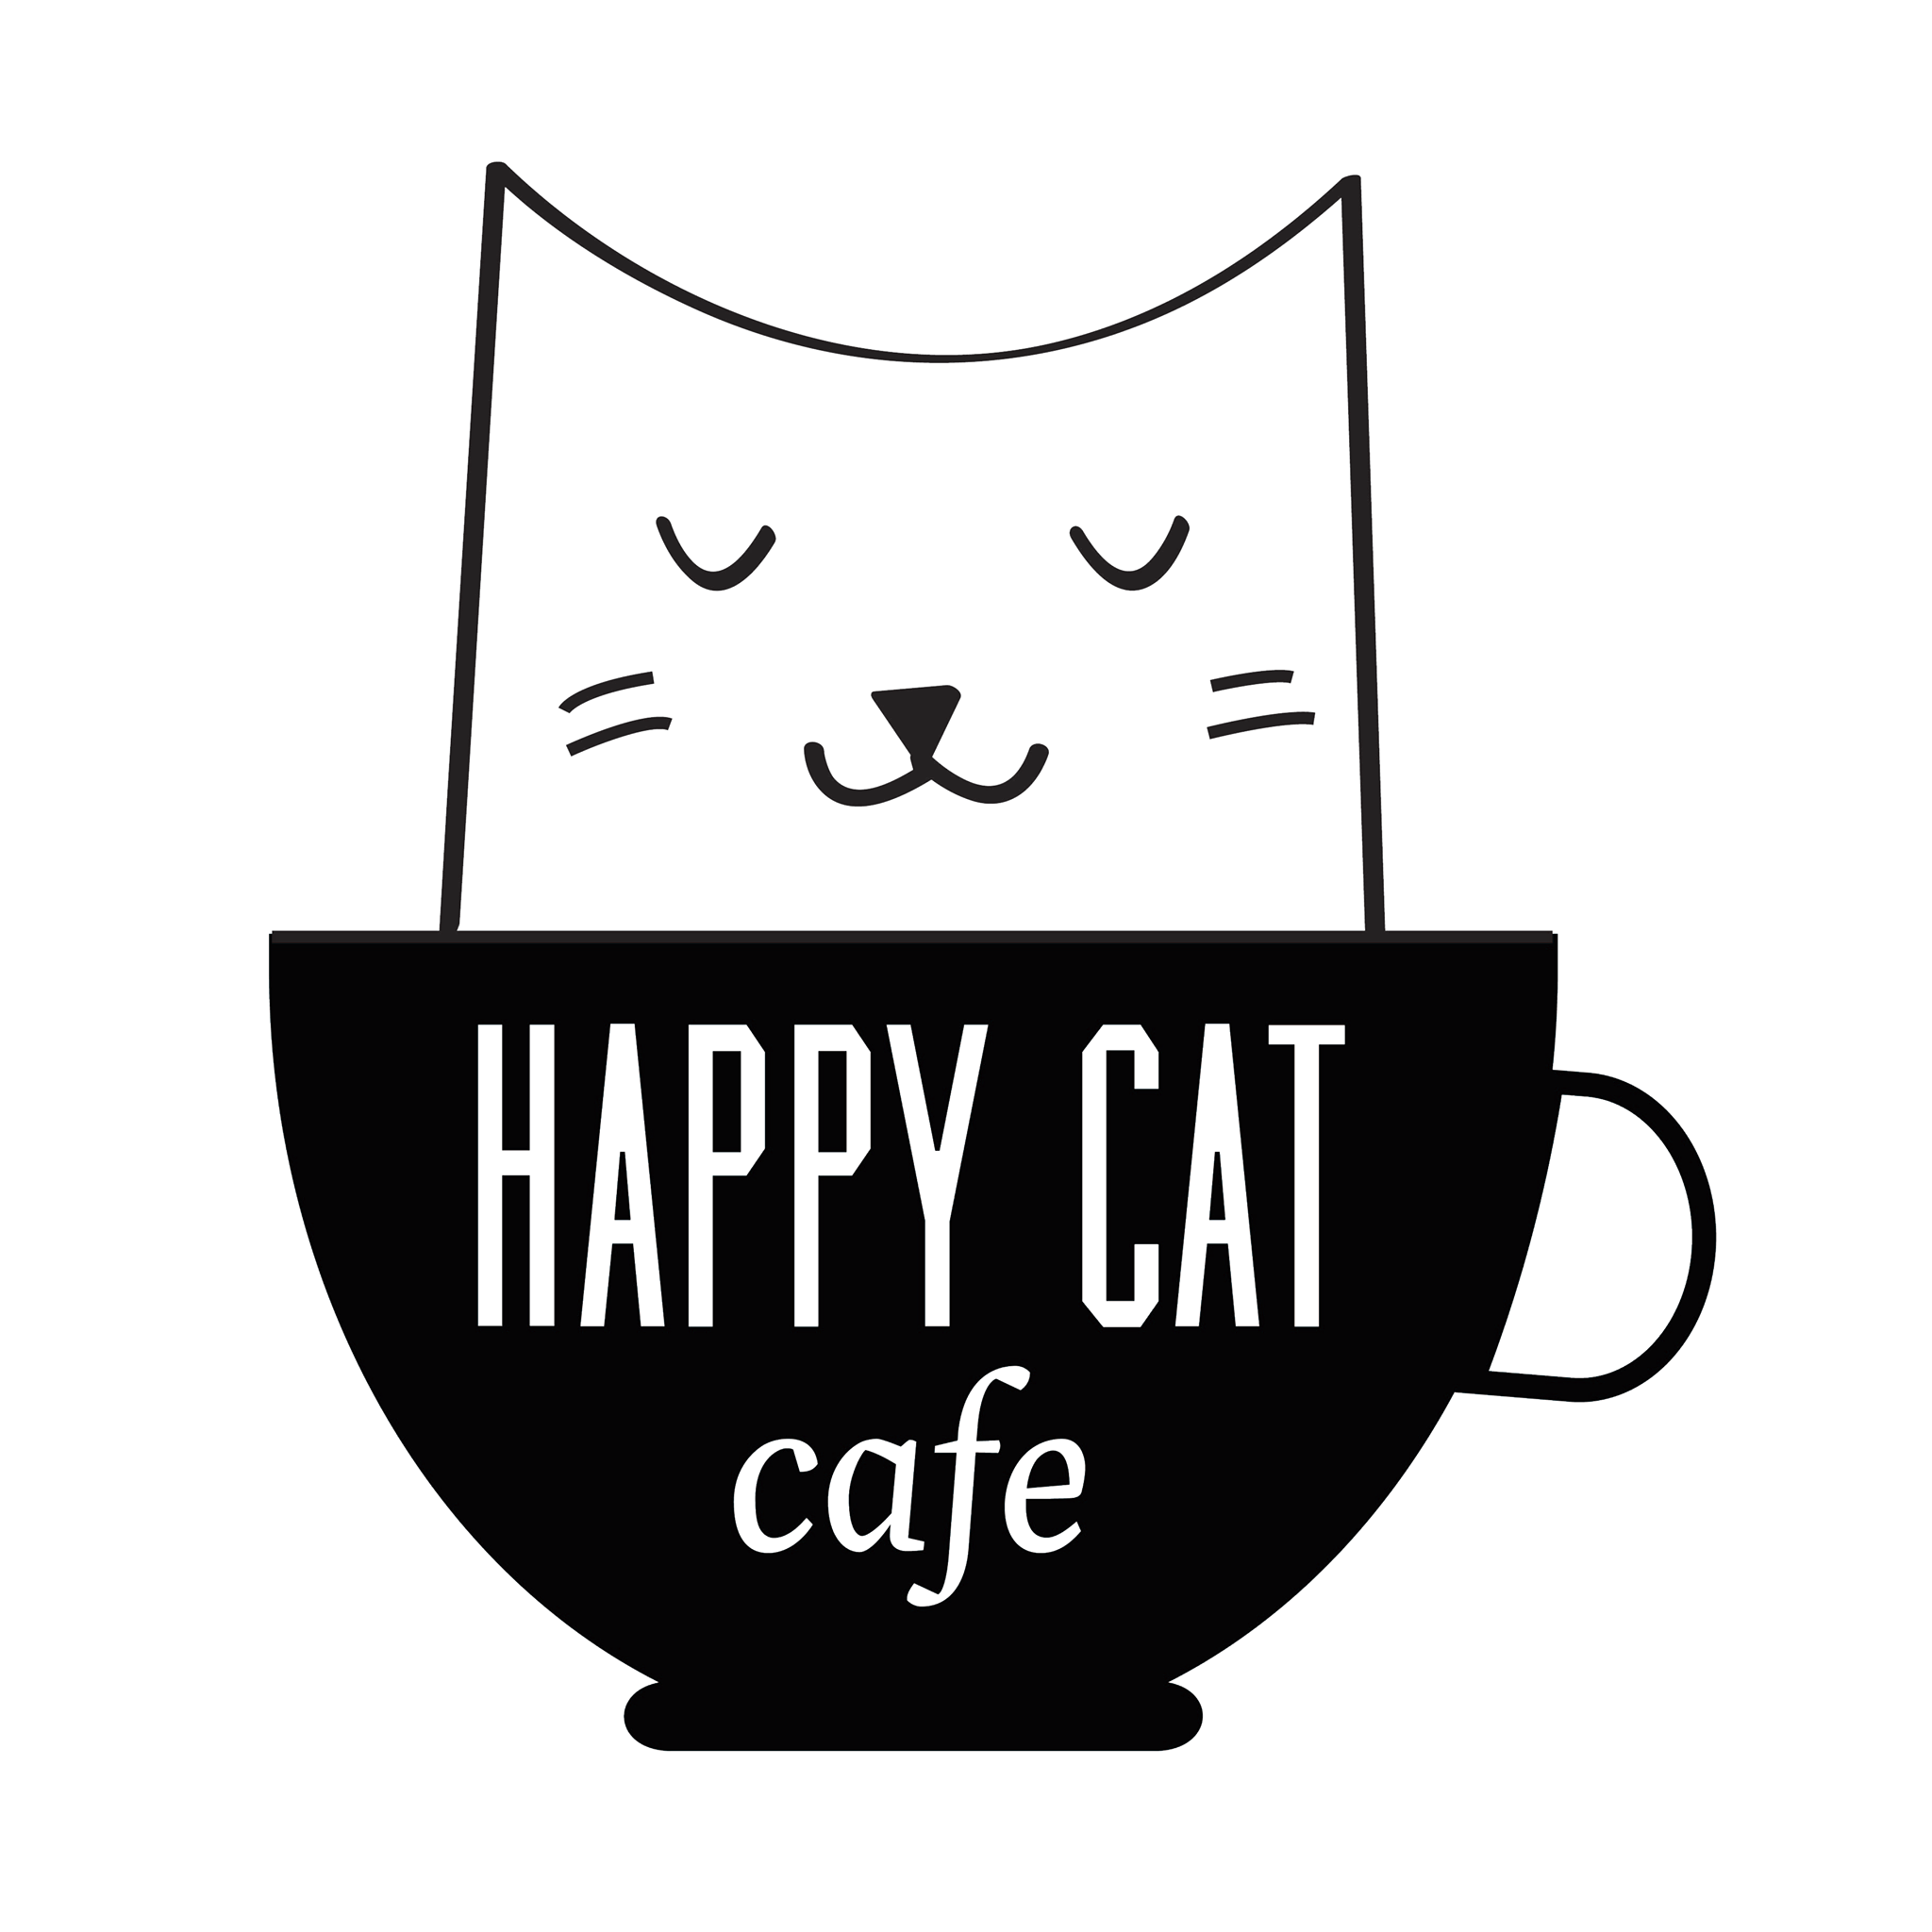 Company logo of Happy Cat Cafe